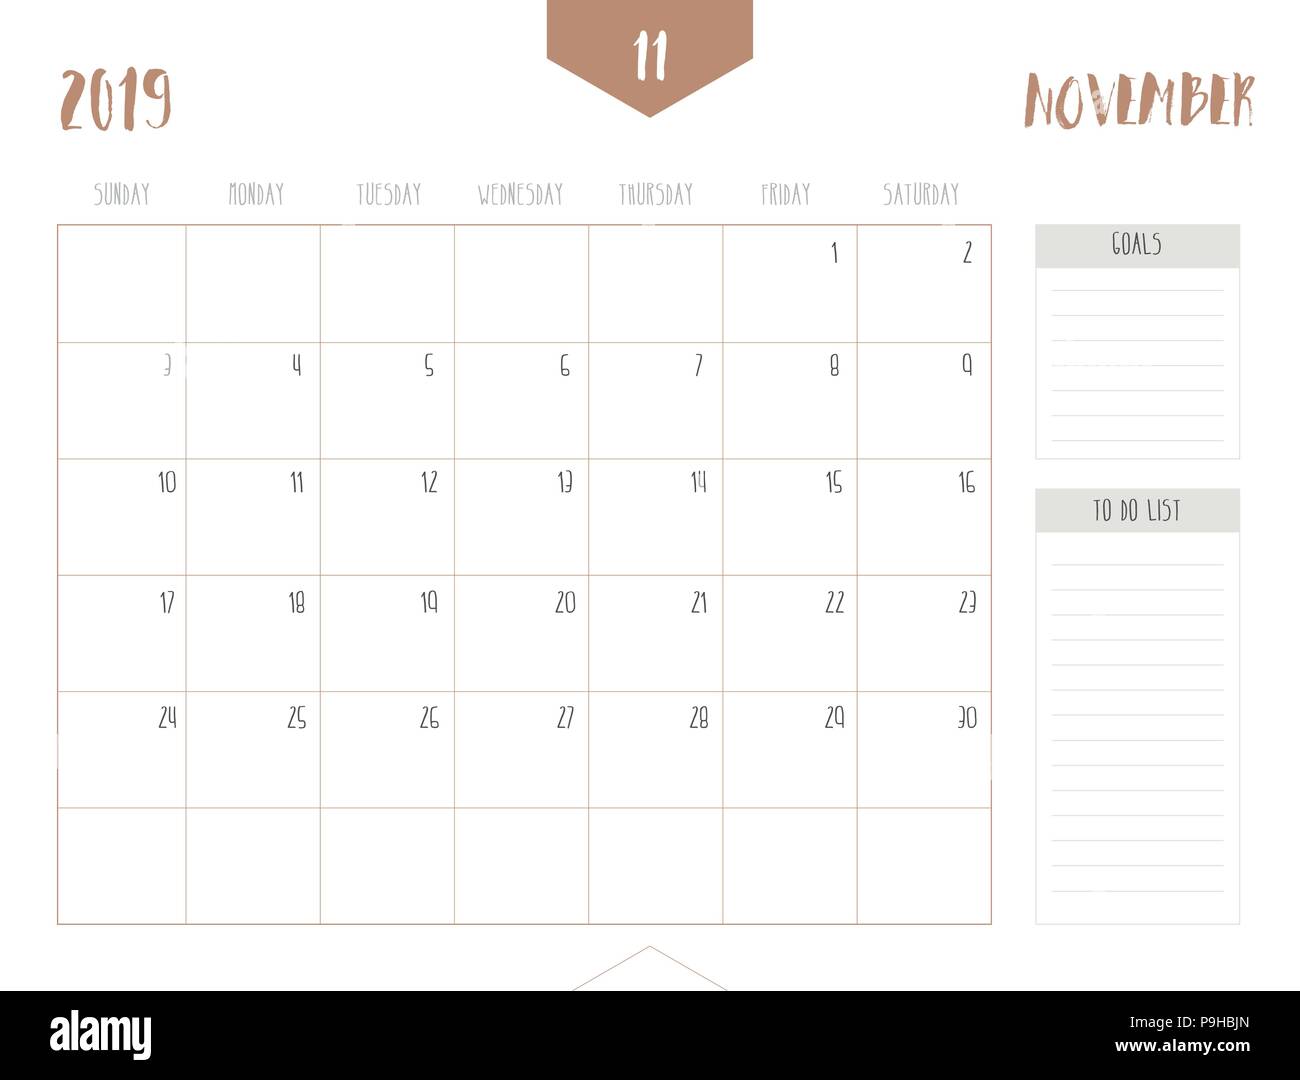 Vettore del calendario 2019 ( novembre ) in semplice pulire il tavolo stile con obiettivi e fare casella di elenco; la piena dimensione 21 x 16 cm; la settimana inizia la domenica Illustrazione Vettoriale